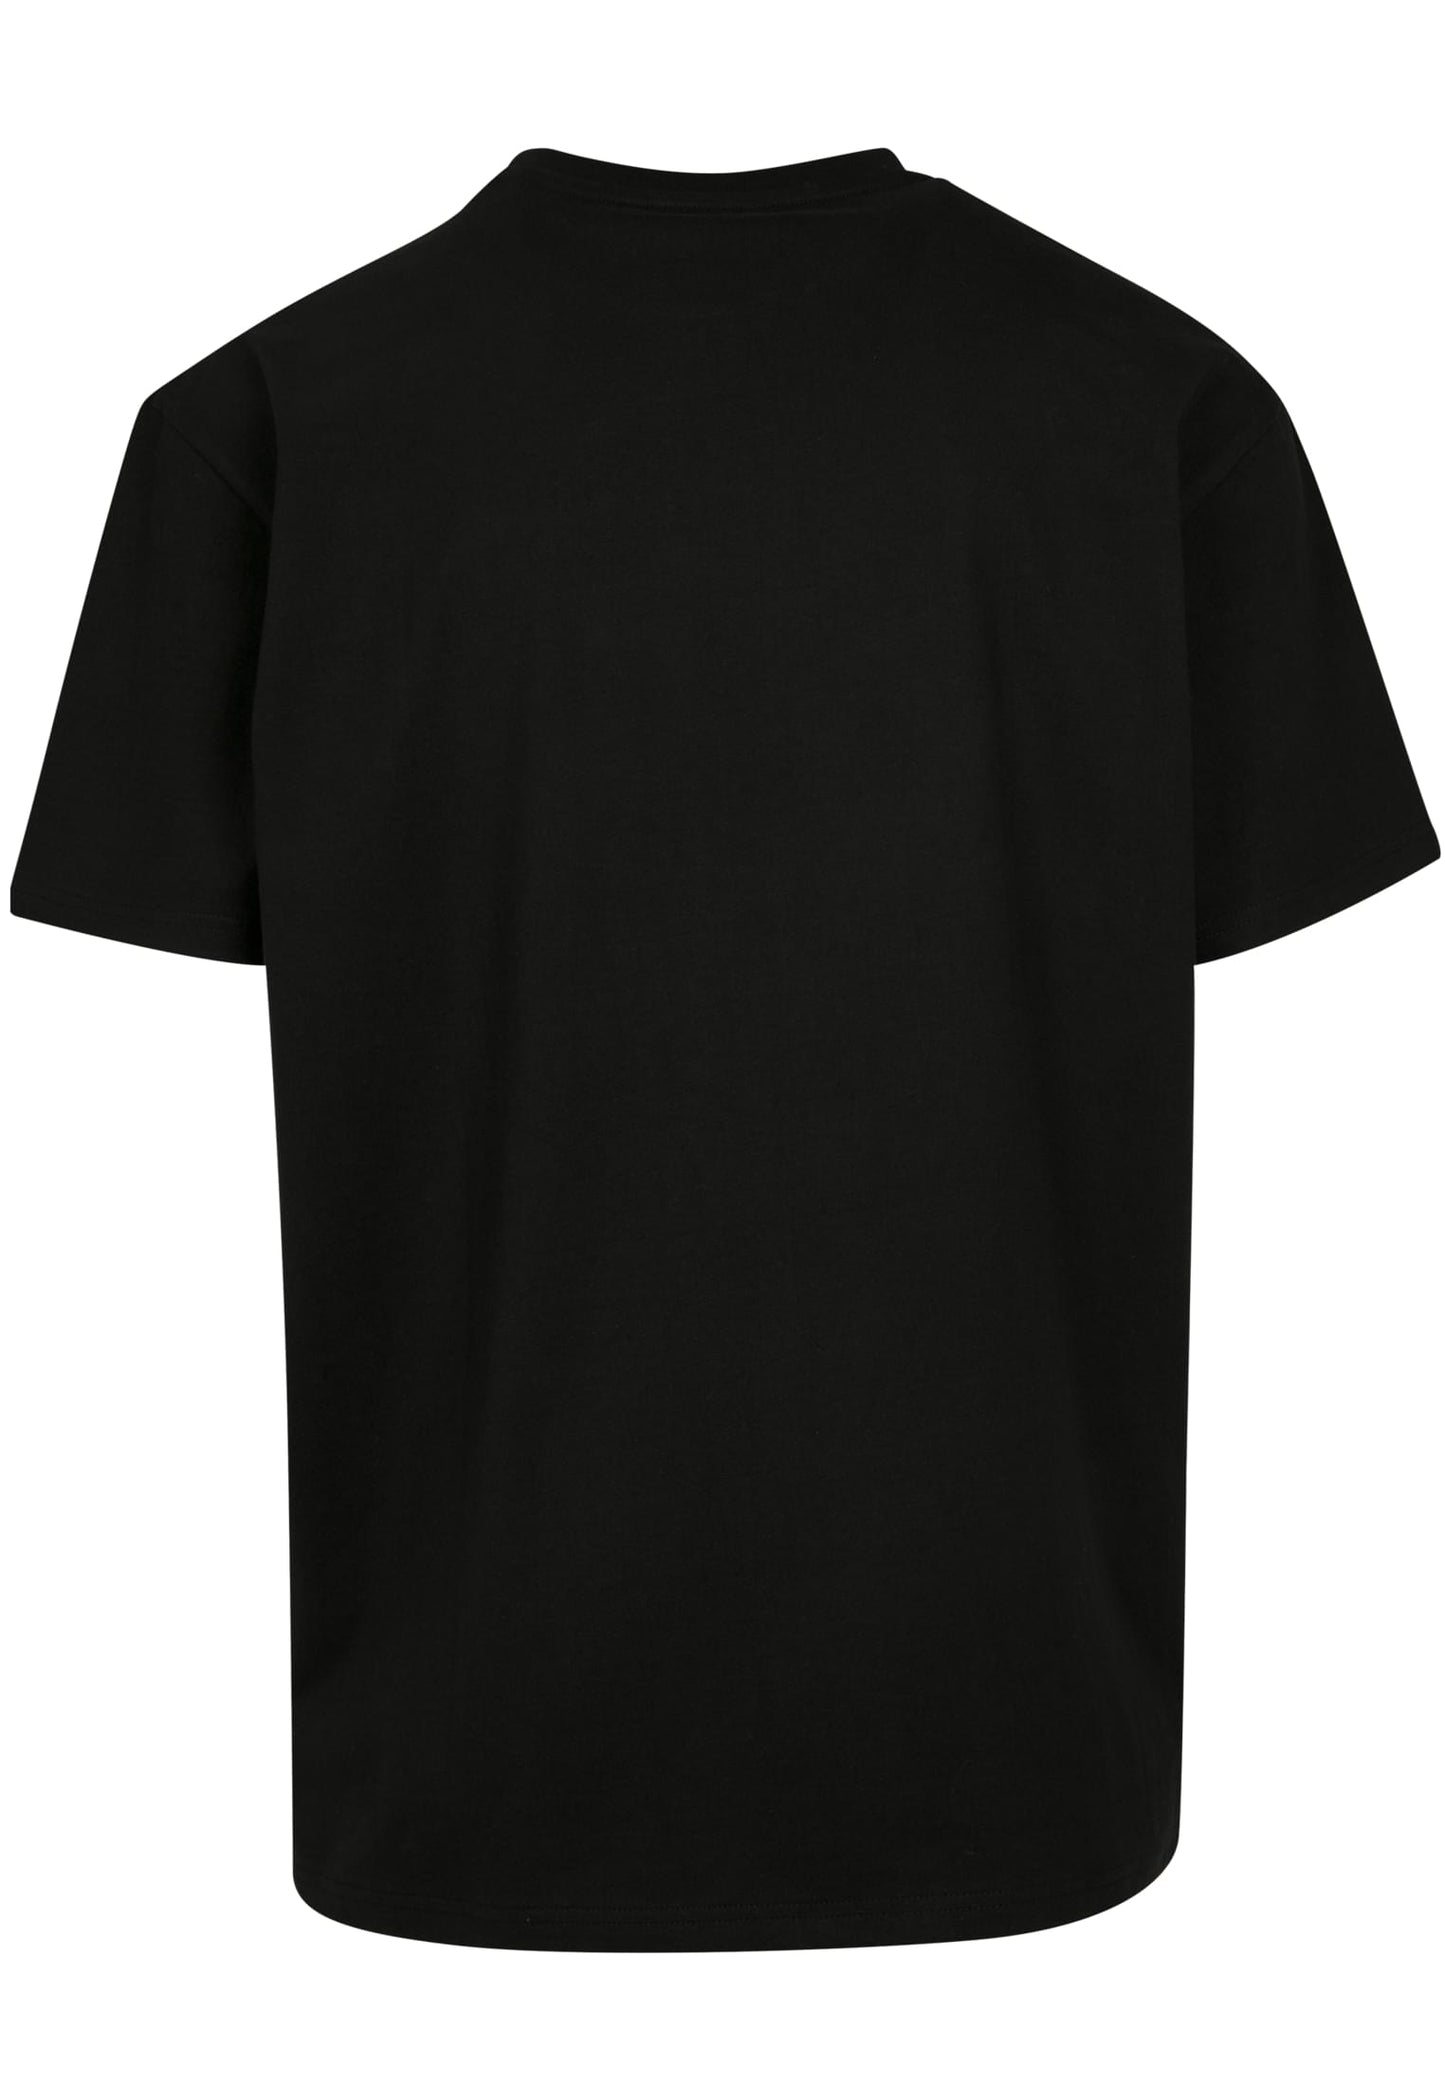 Wu-Tang Clan - Enter the Wu - Oversize T-Shirt